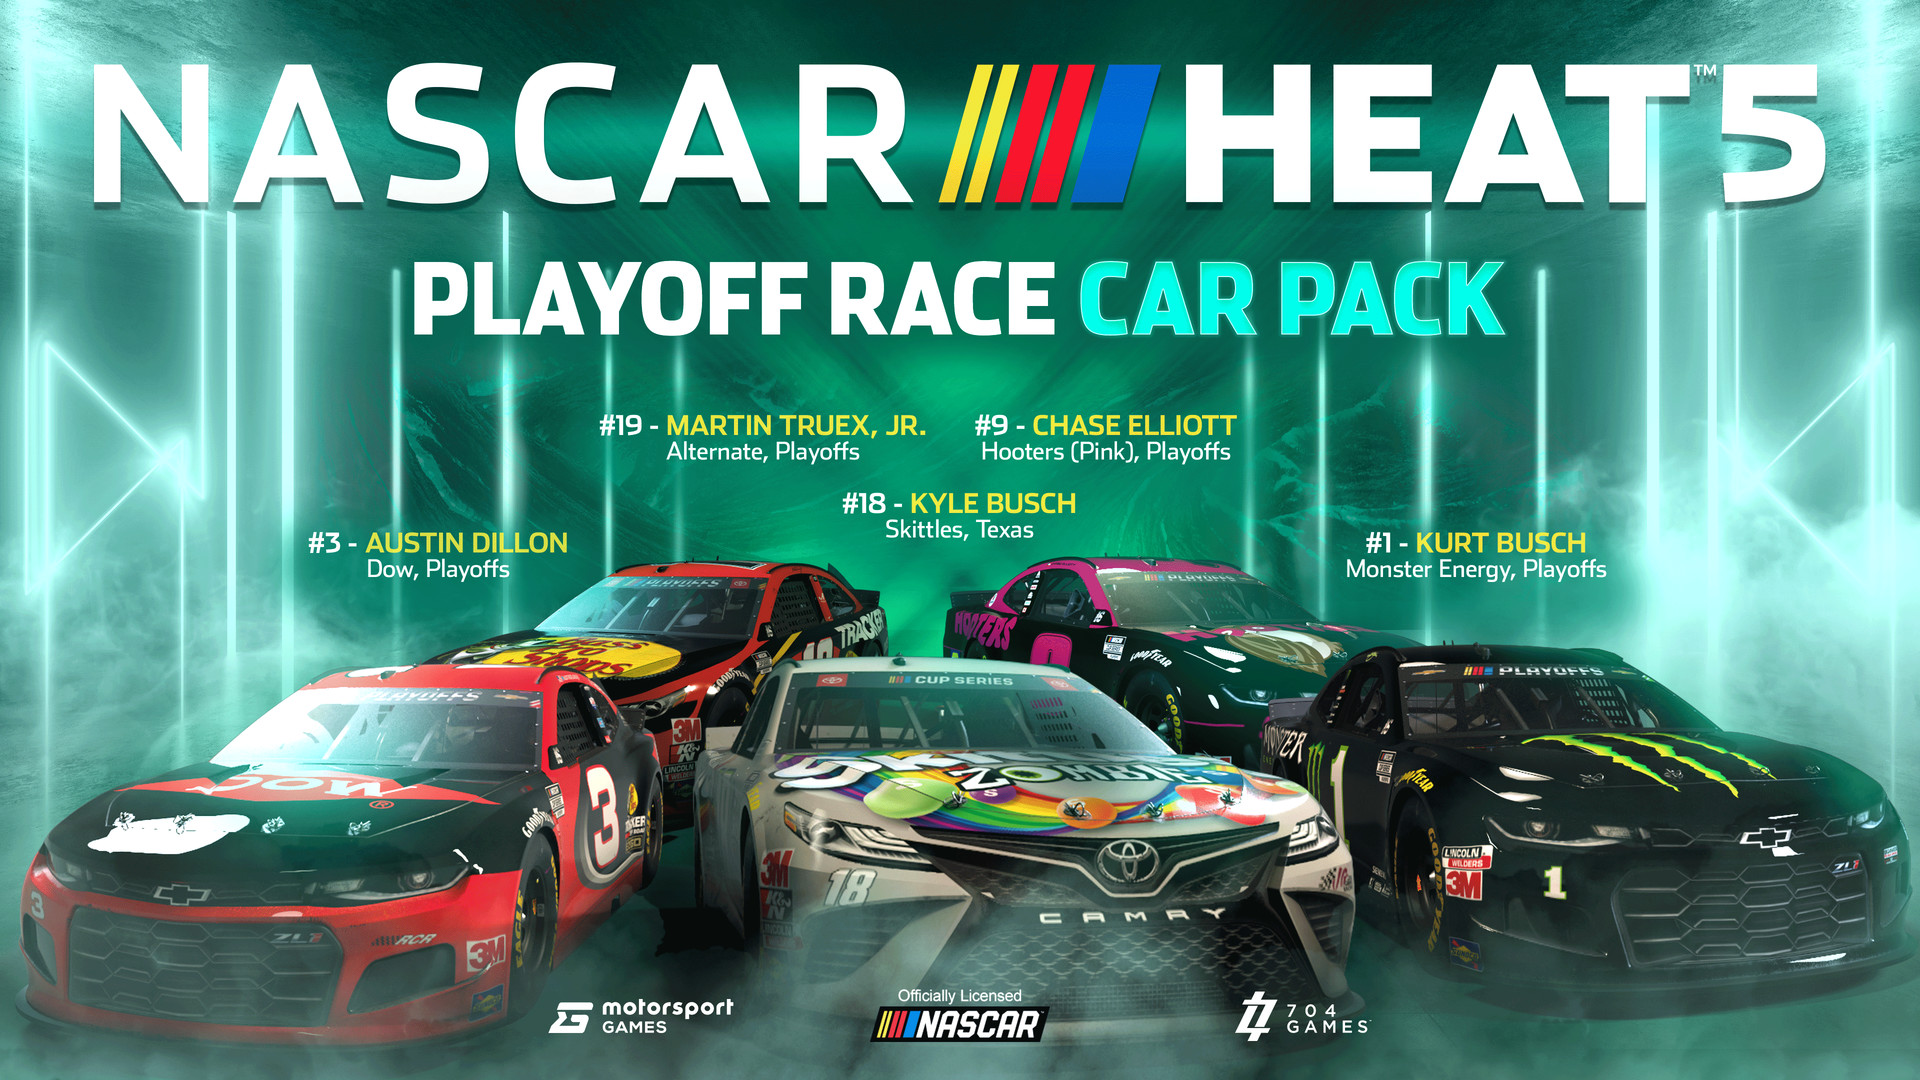 NASCAR Heat 5 - Playoff Pack Featured Screenshot #1